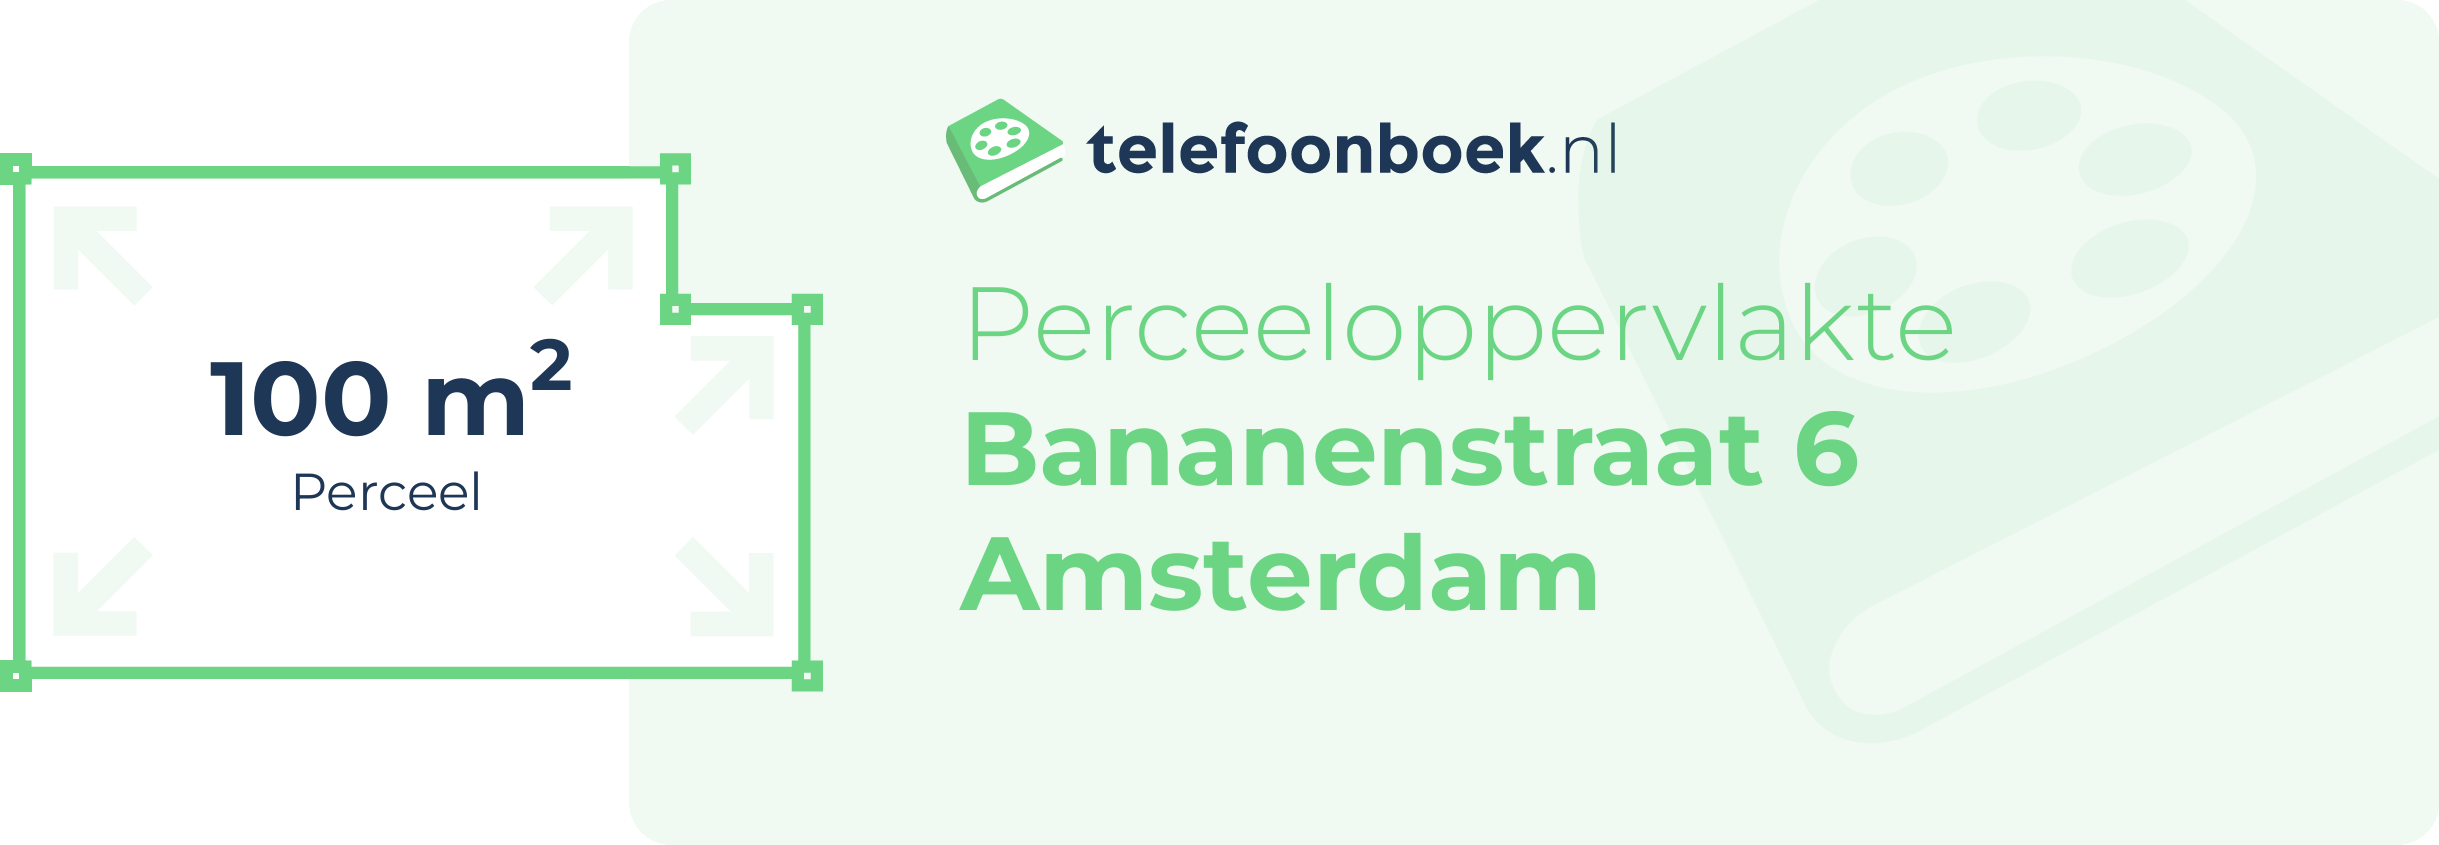 Perceeloppervlakte Bananenstraat 6 Amsterdam